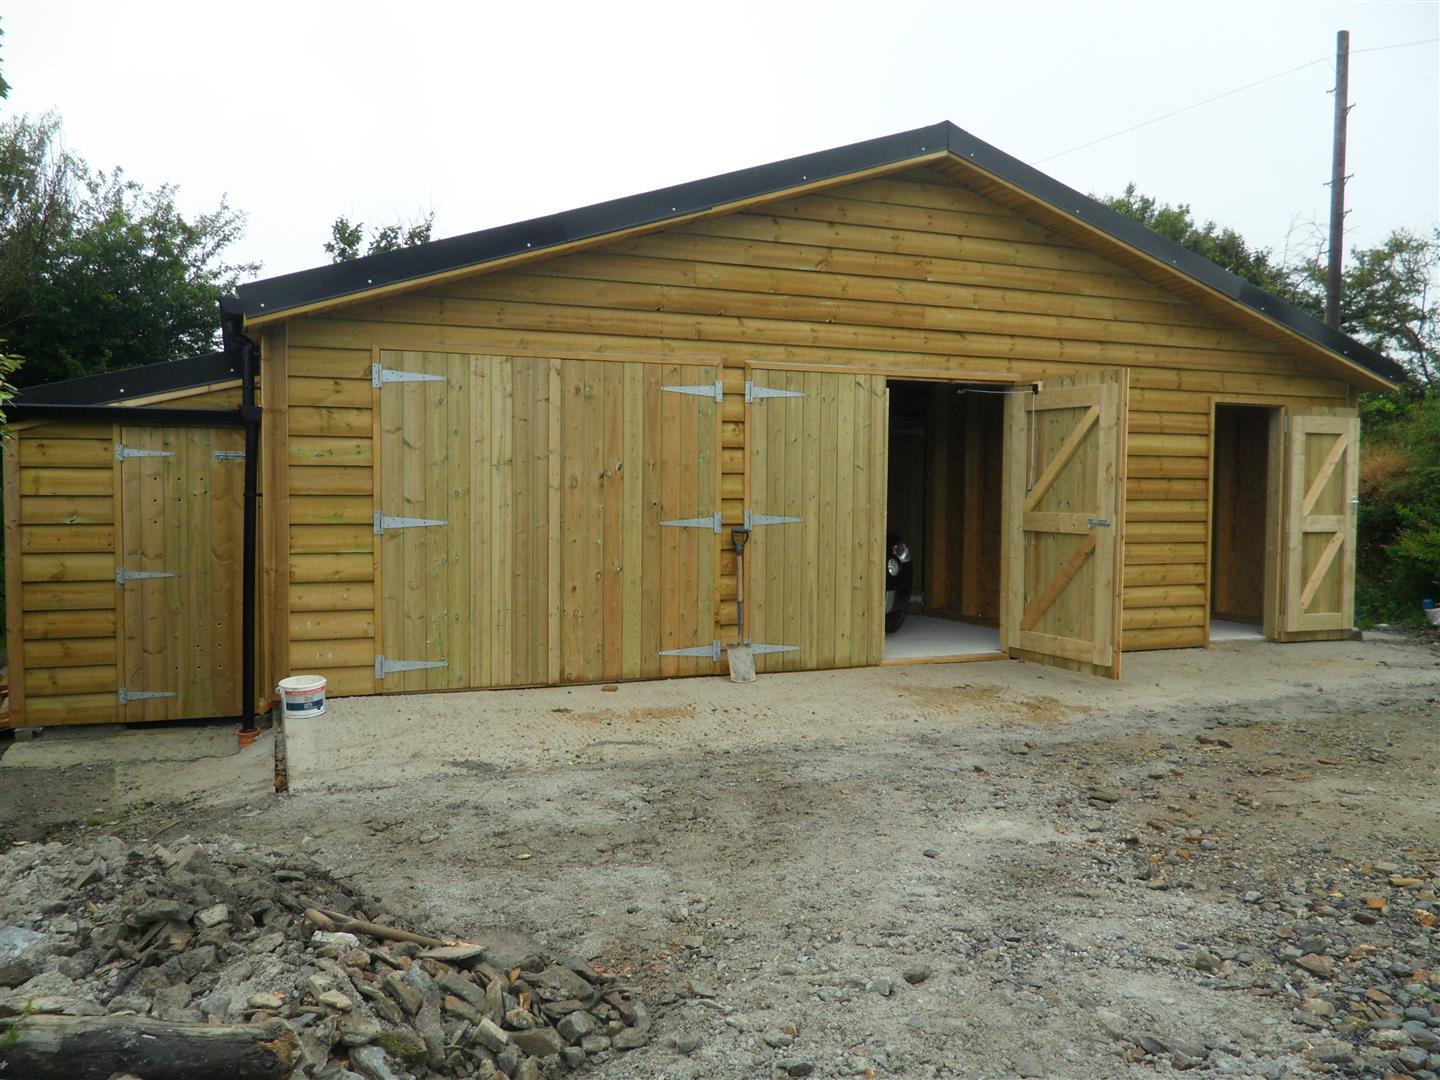 Timber frame garage, Tintagel, Cornwall